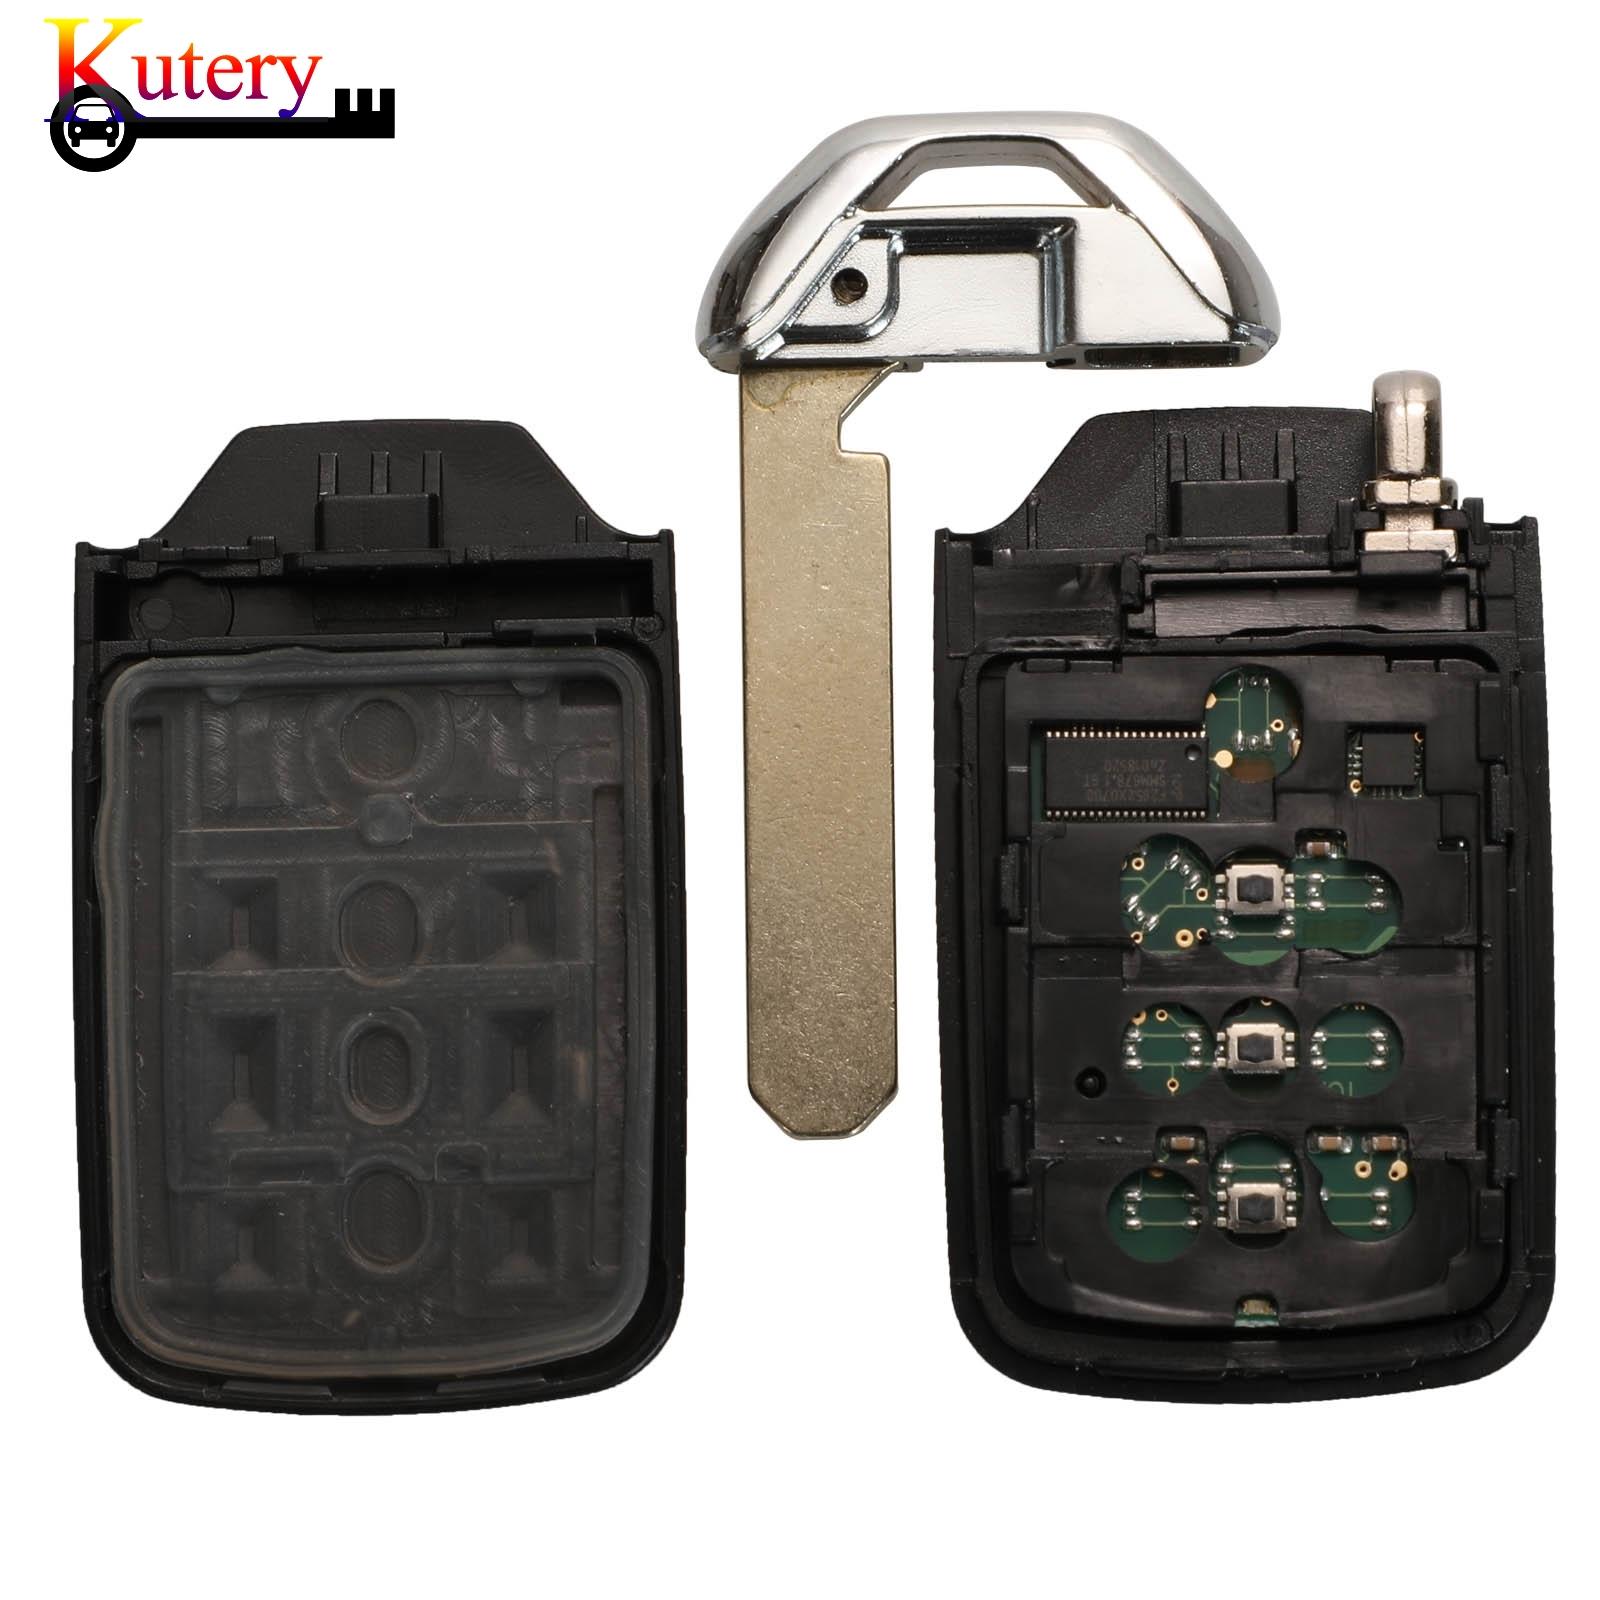 Изображение товара: Пульт дистанционного управления для автомобиля Kutery, 5 шт./лот, для Honda City Accord HR-V, 4 кнопки, 313,8/433,92 МГц, чип ID47, 72147-T9A-X01, KR5V1X